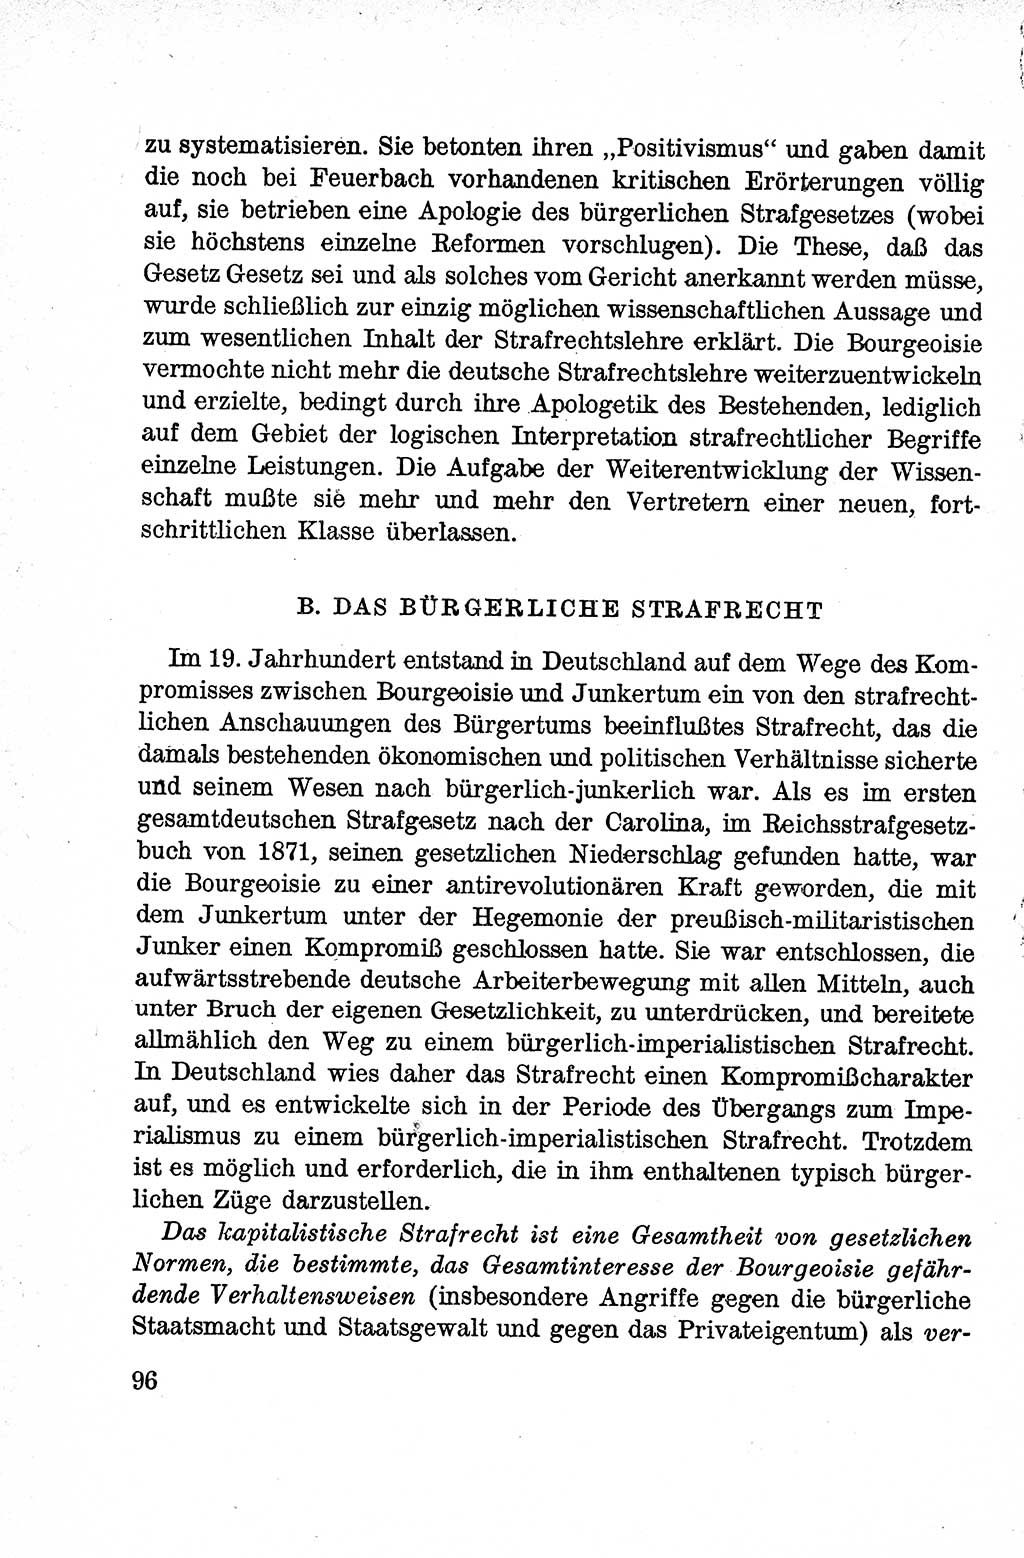 Lehrbuch des Strafrechts der Deutschen Demokratischen Republik (DDR), Allgemeiner Teil 1959, Seite 96 (Lb. Strafr. DDR AT 1959, S. 96)